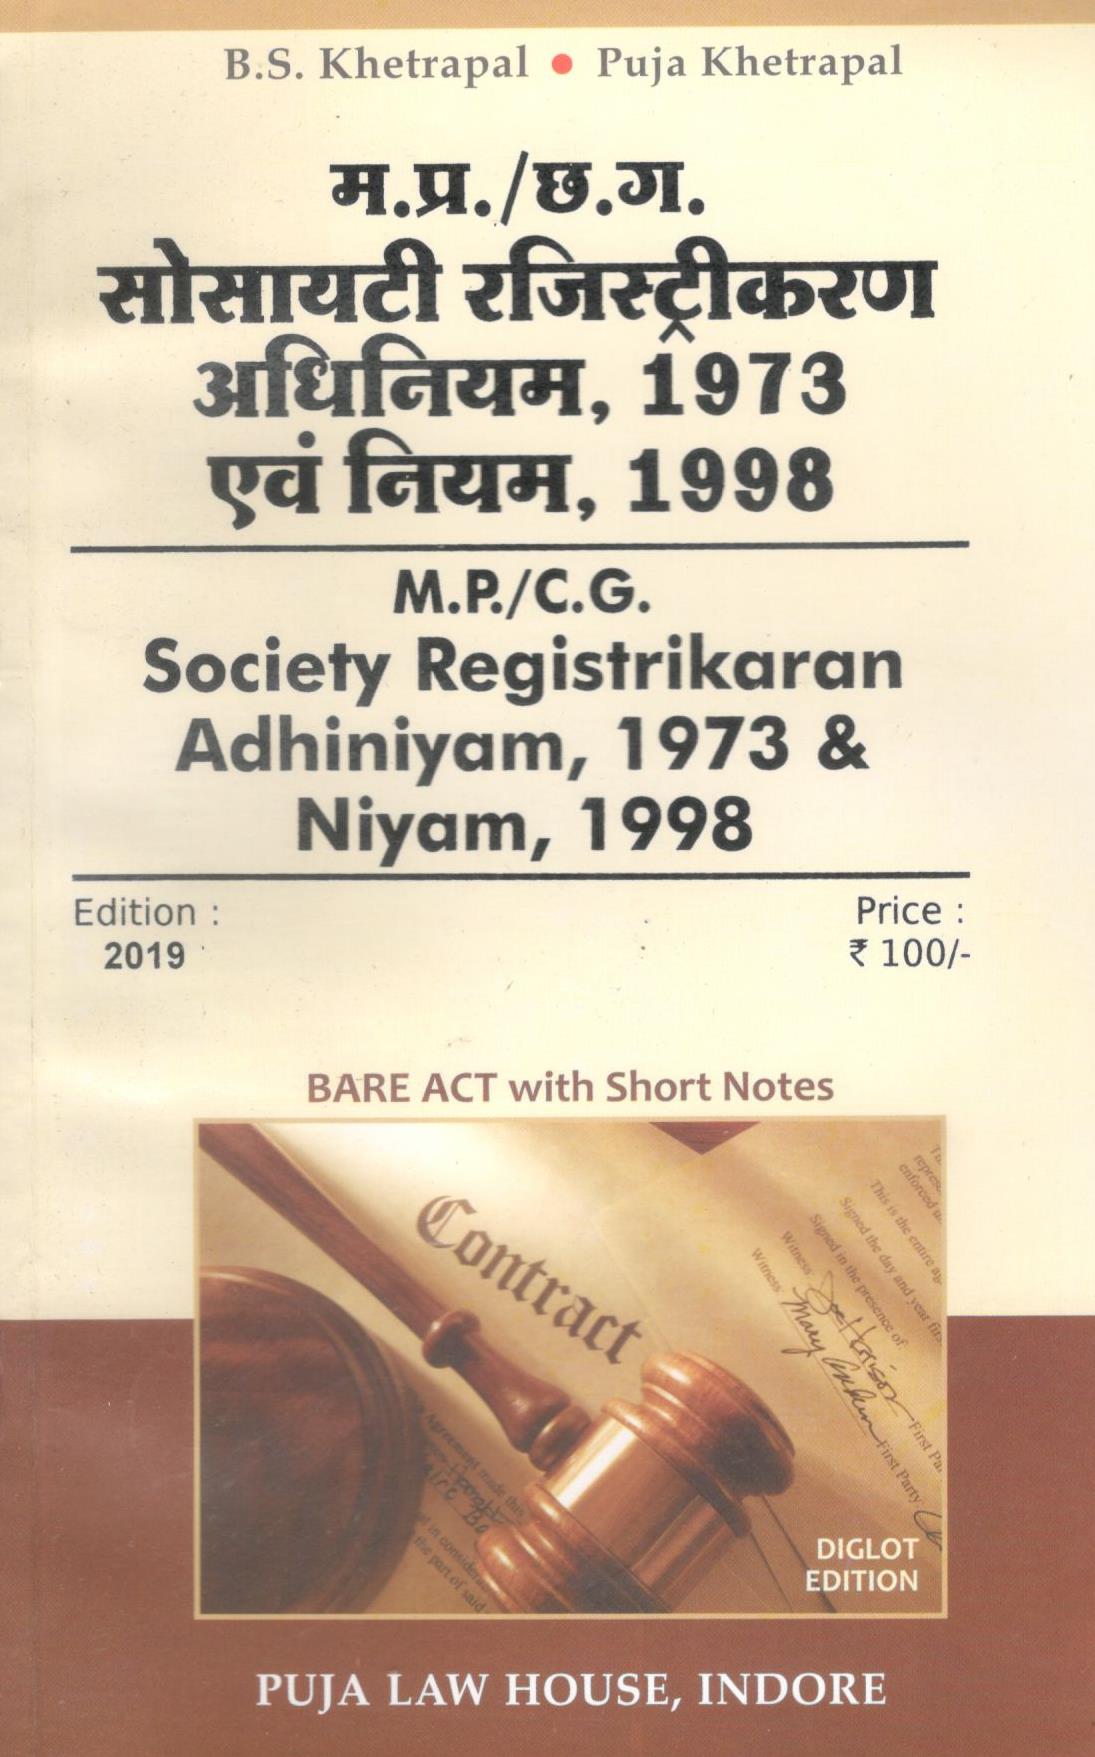 छ. ग. सोसायटी रजिस्ट्रीकरण अधिनियम, 1973 एवं नियम, 1998 / C.G. Society Registrikaran Adhiniyam 1973 & Niyam, 1998